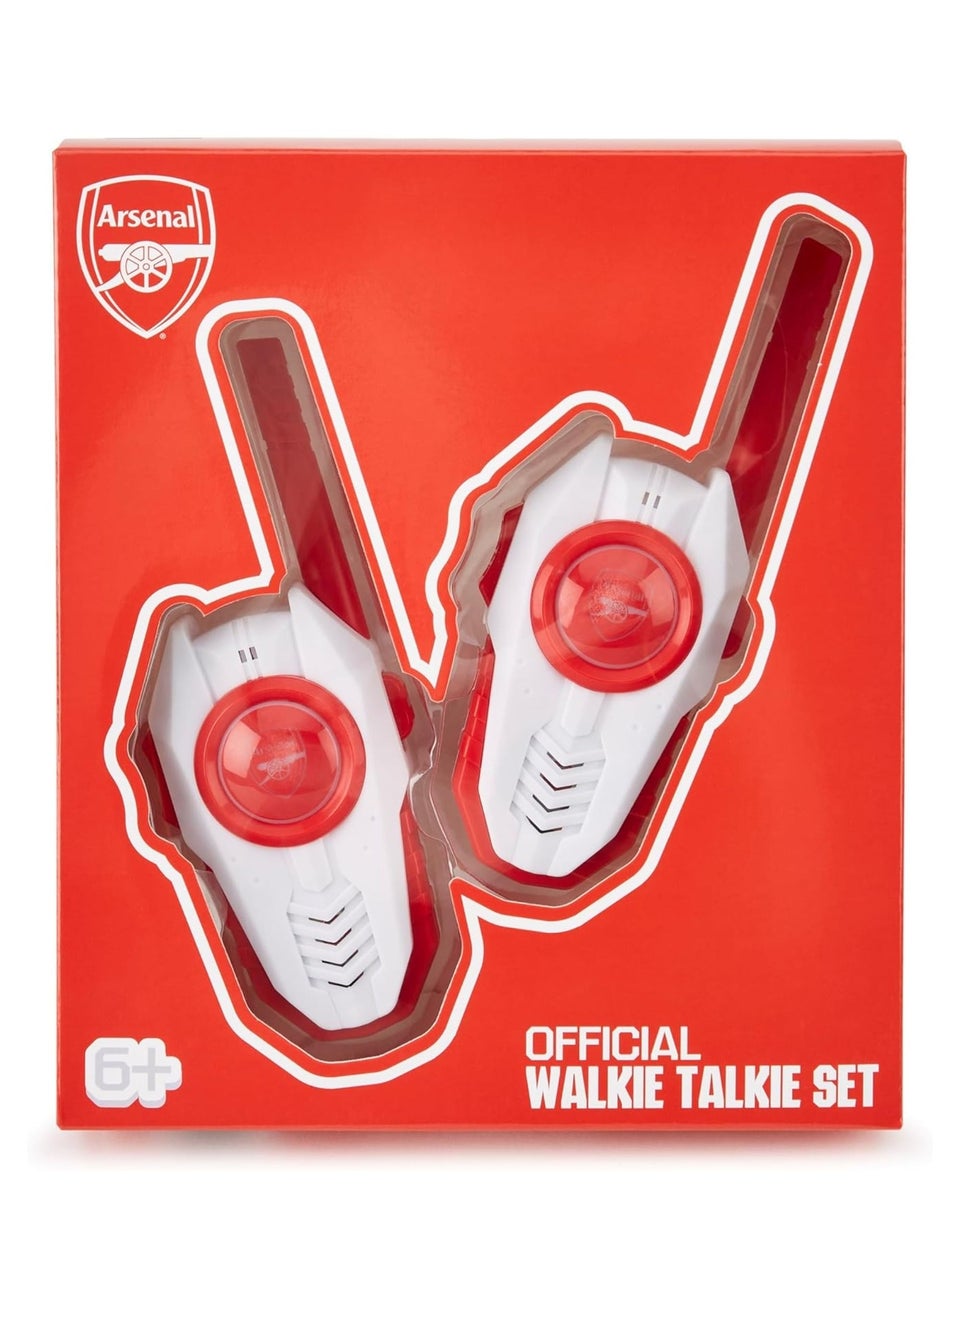 Arsenal Walkie Talkie Set